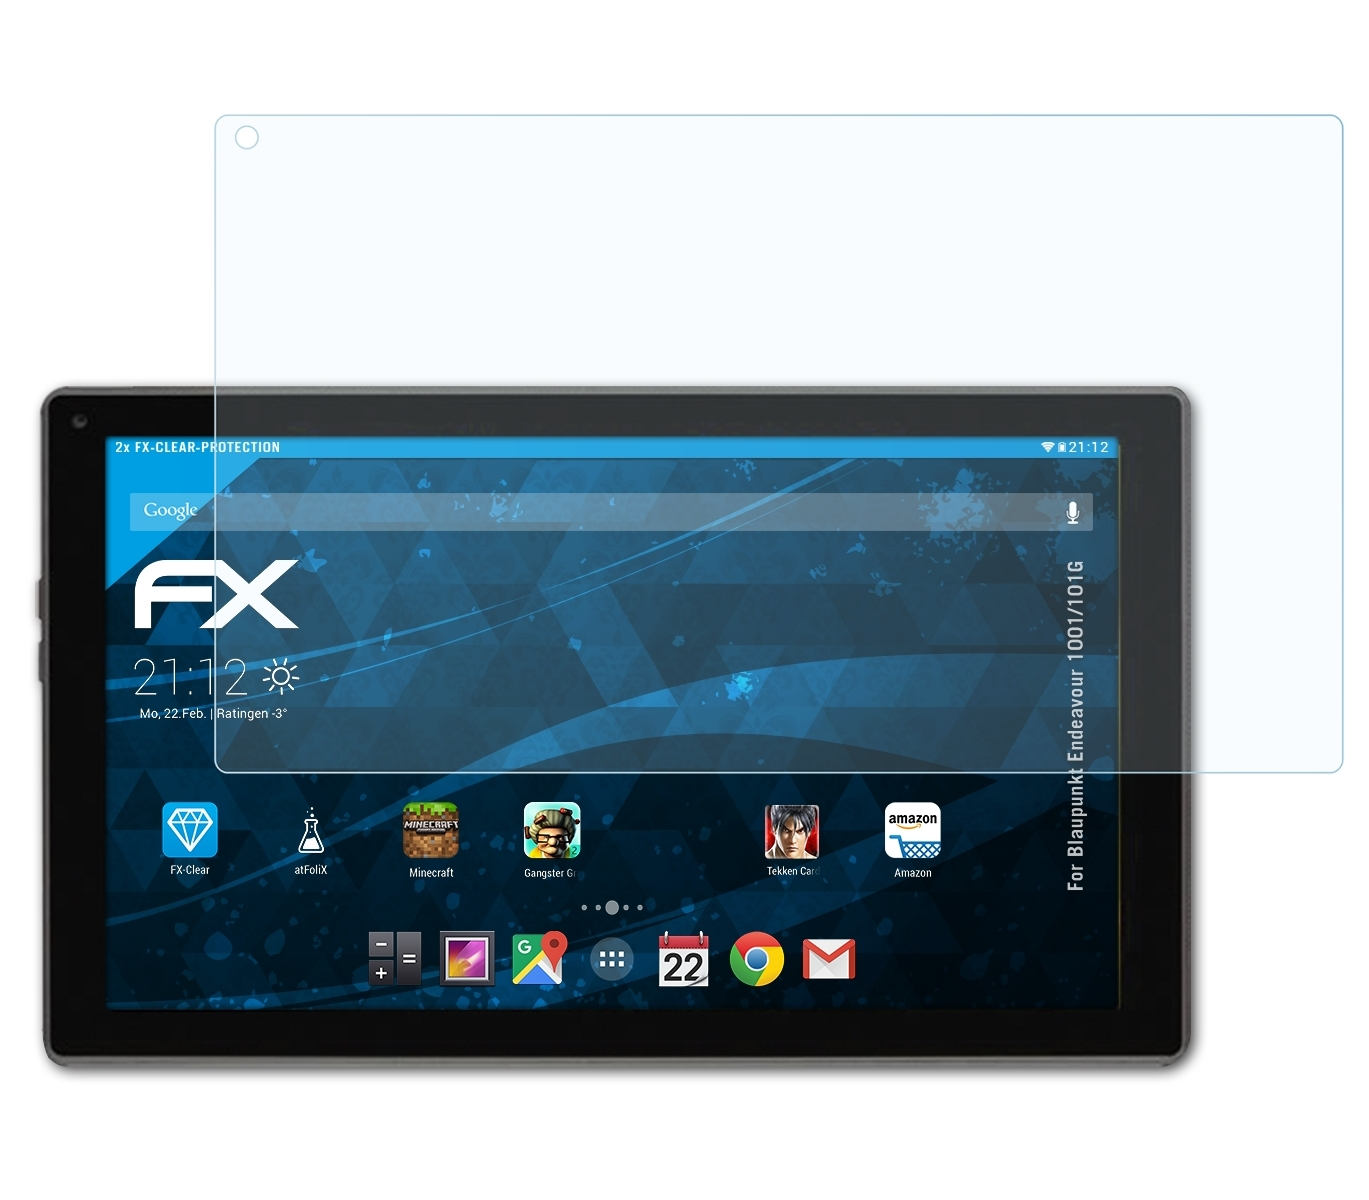 ATFOLIX 2x FX-Clear Displayschutz(für Blaupunkt 1001/101G) Endeavour